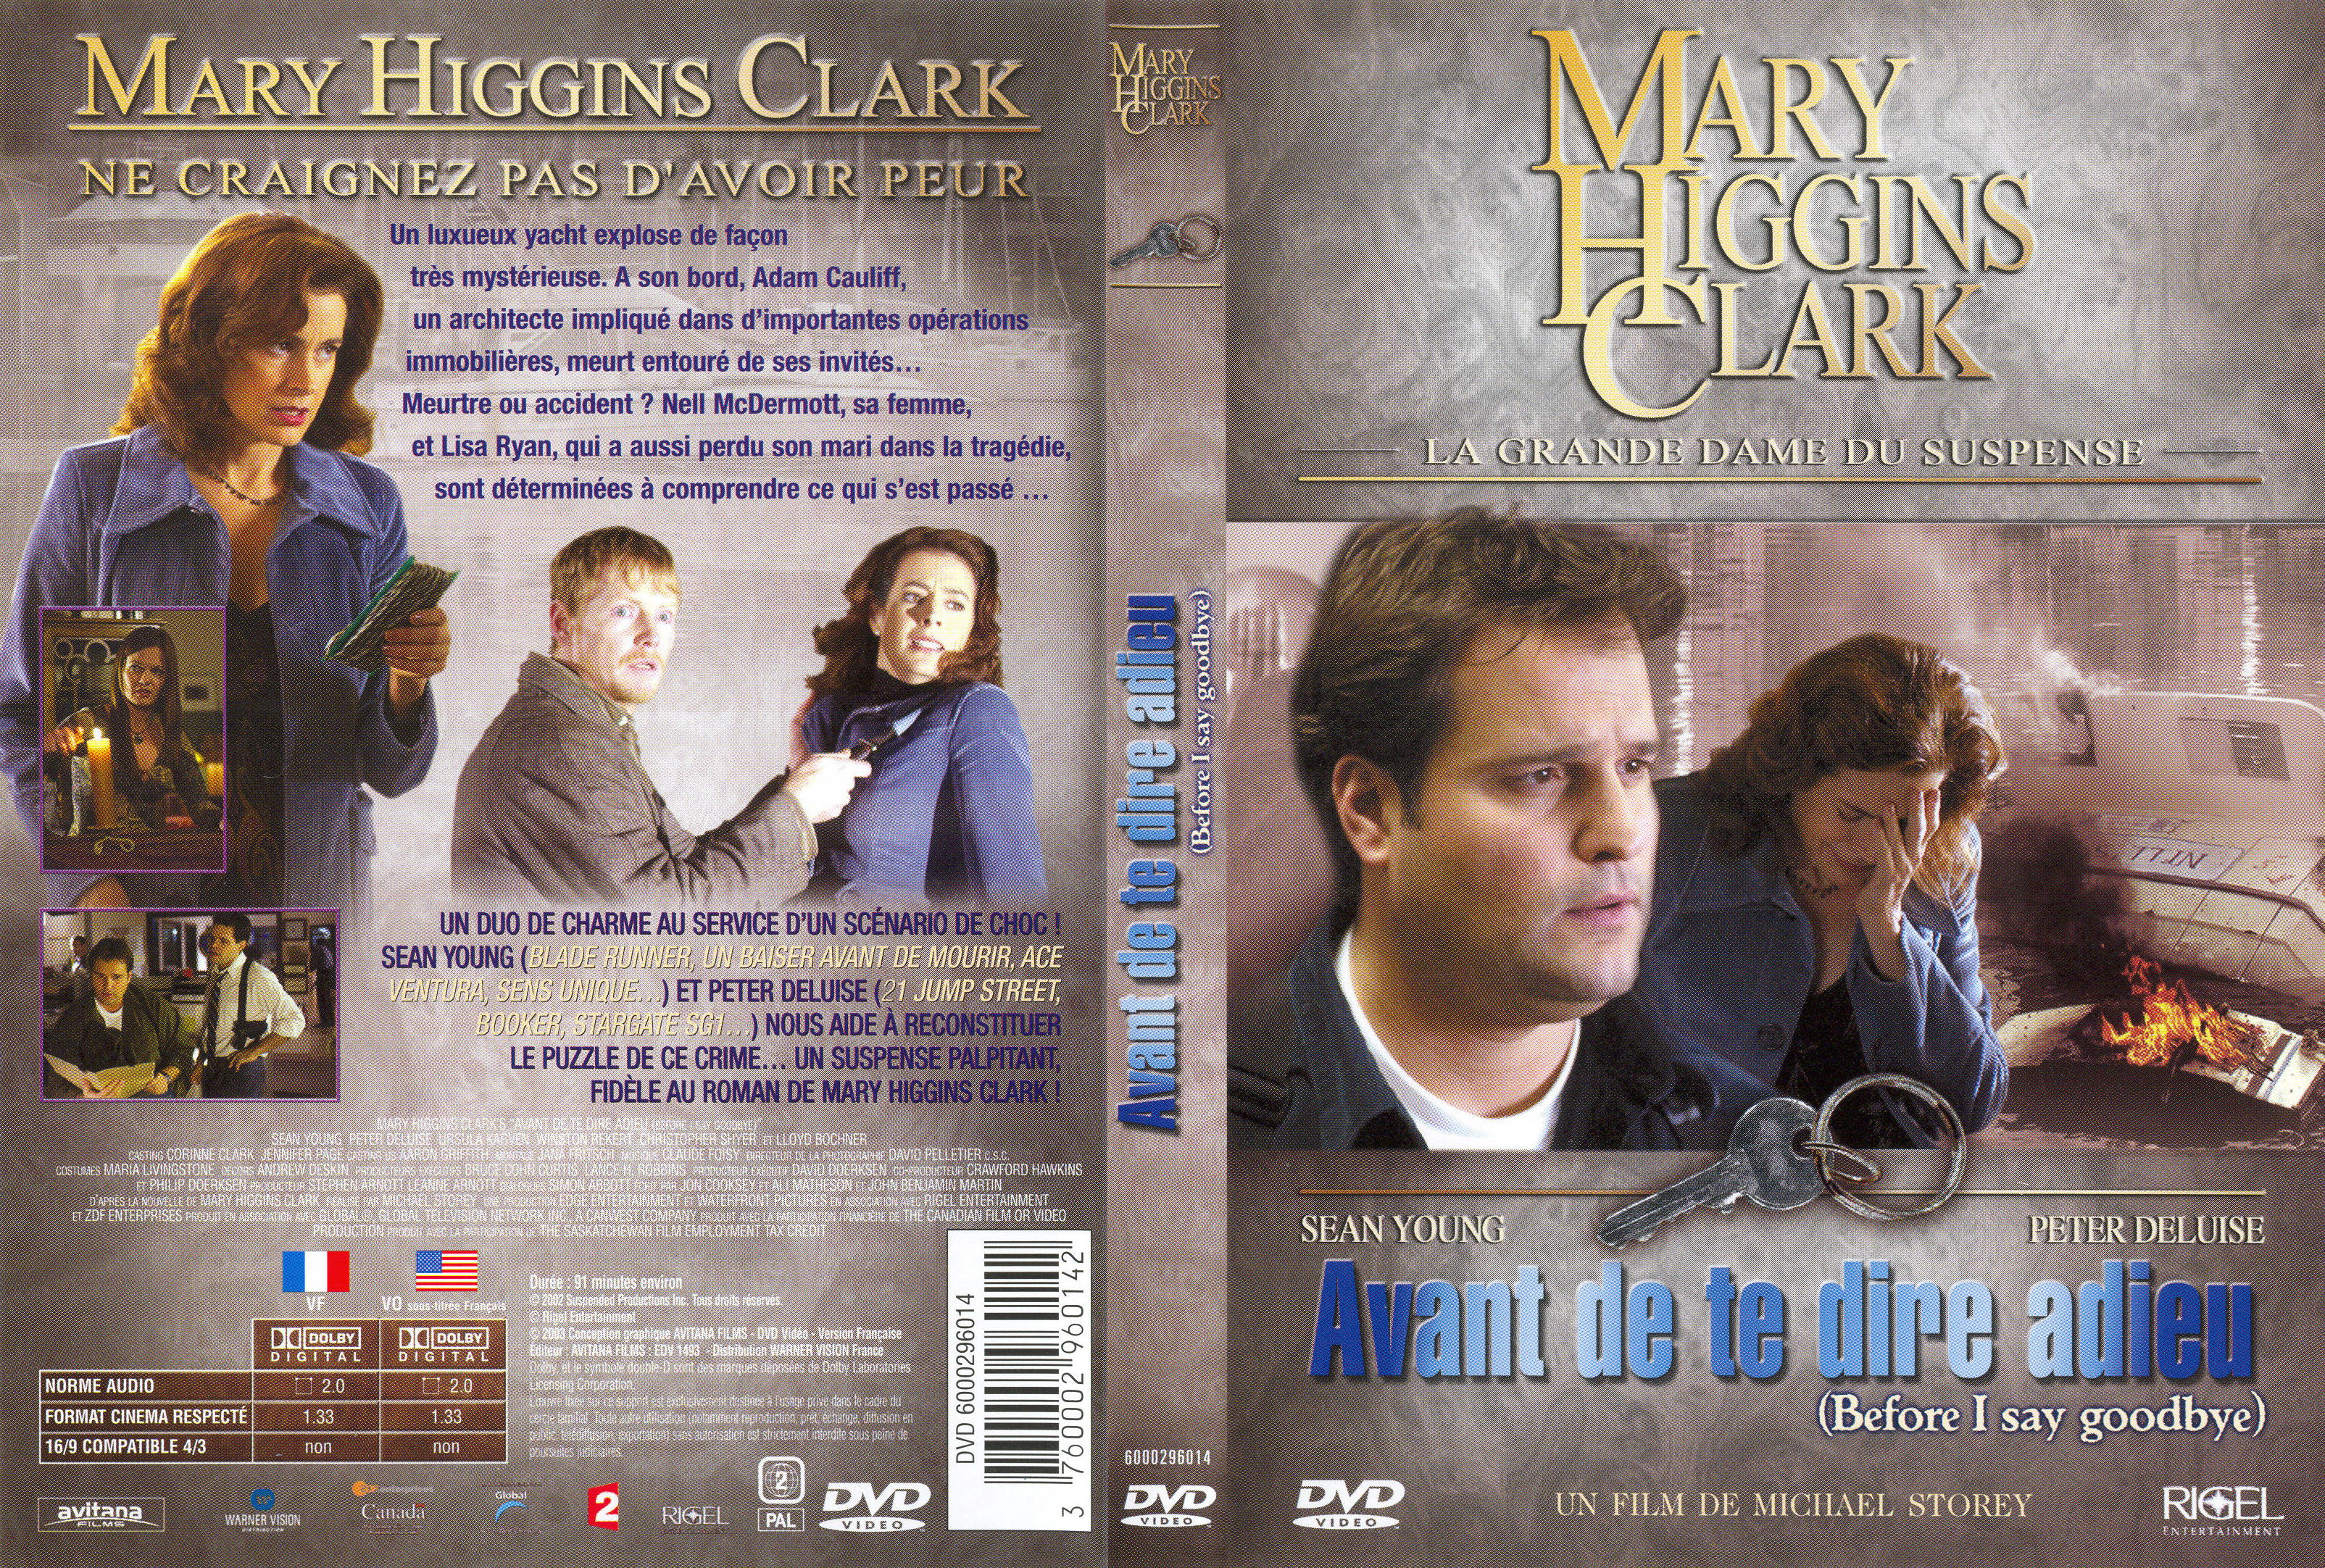 Jaquette DVD Mary Higgins Clark - Avant de te dire adieu v2